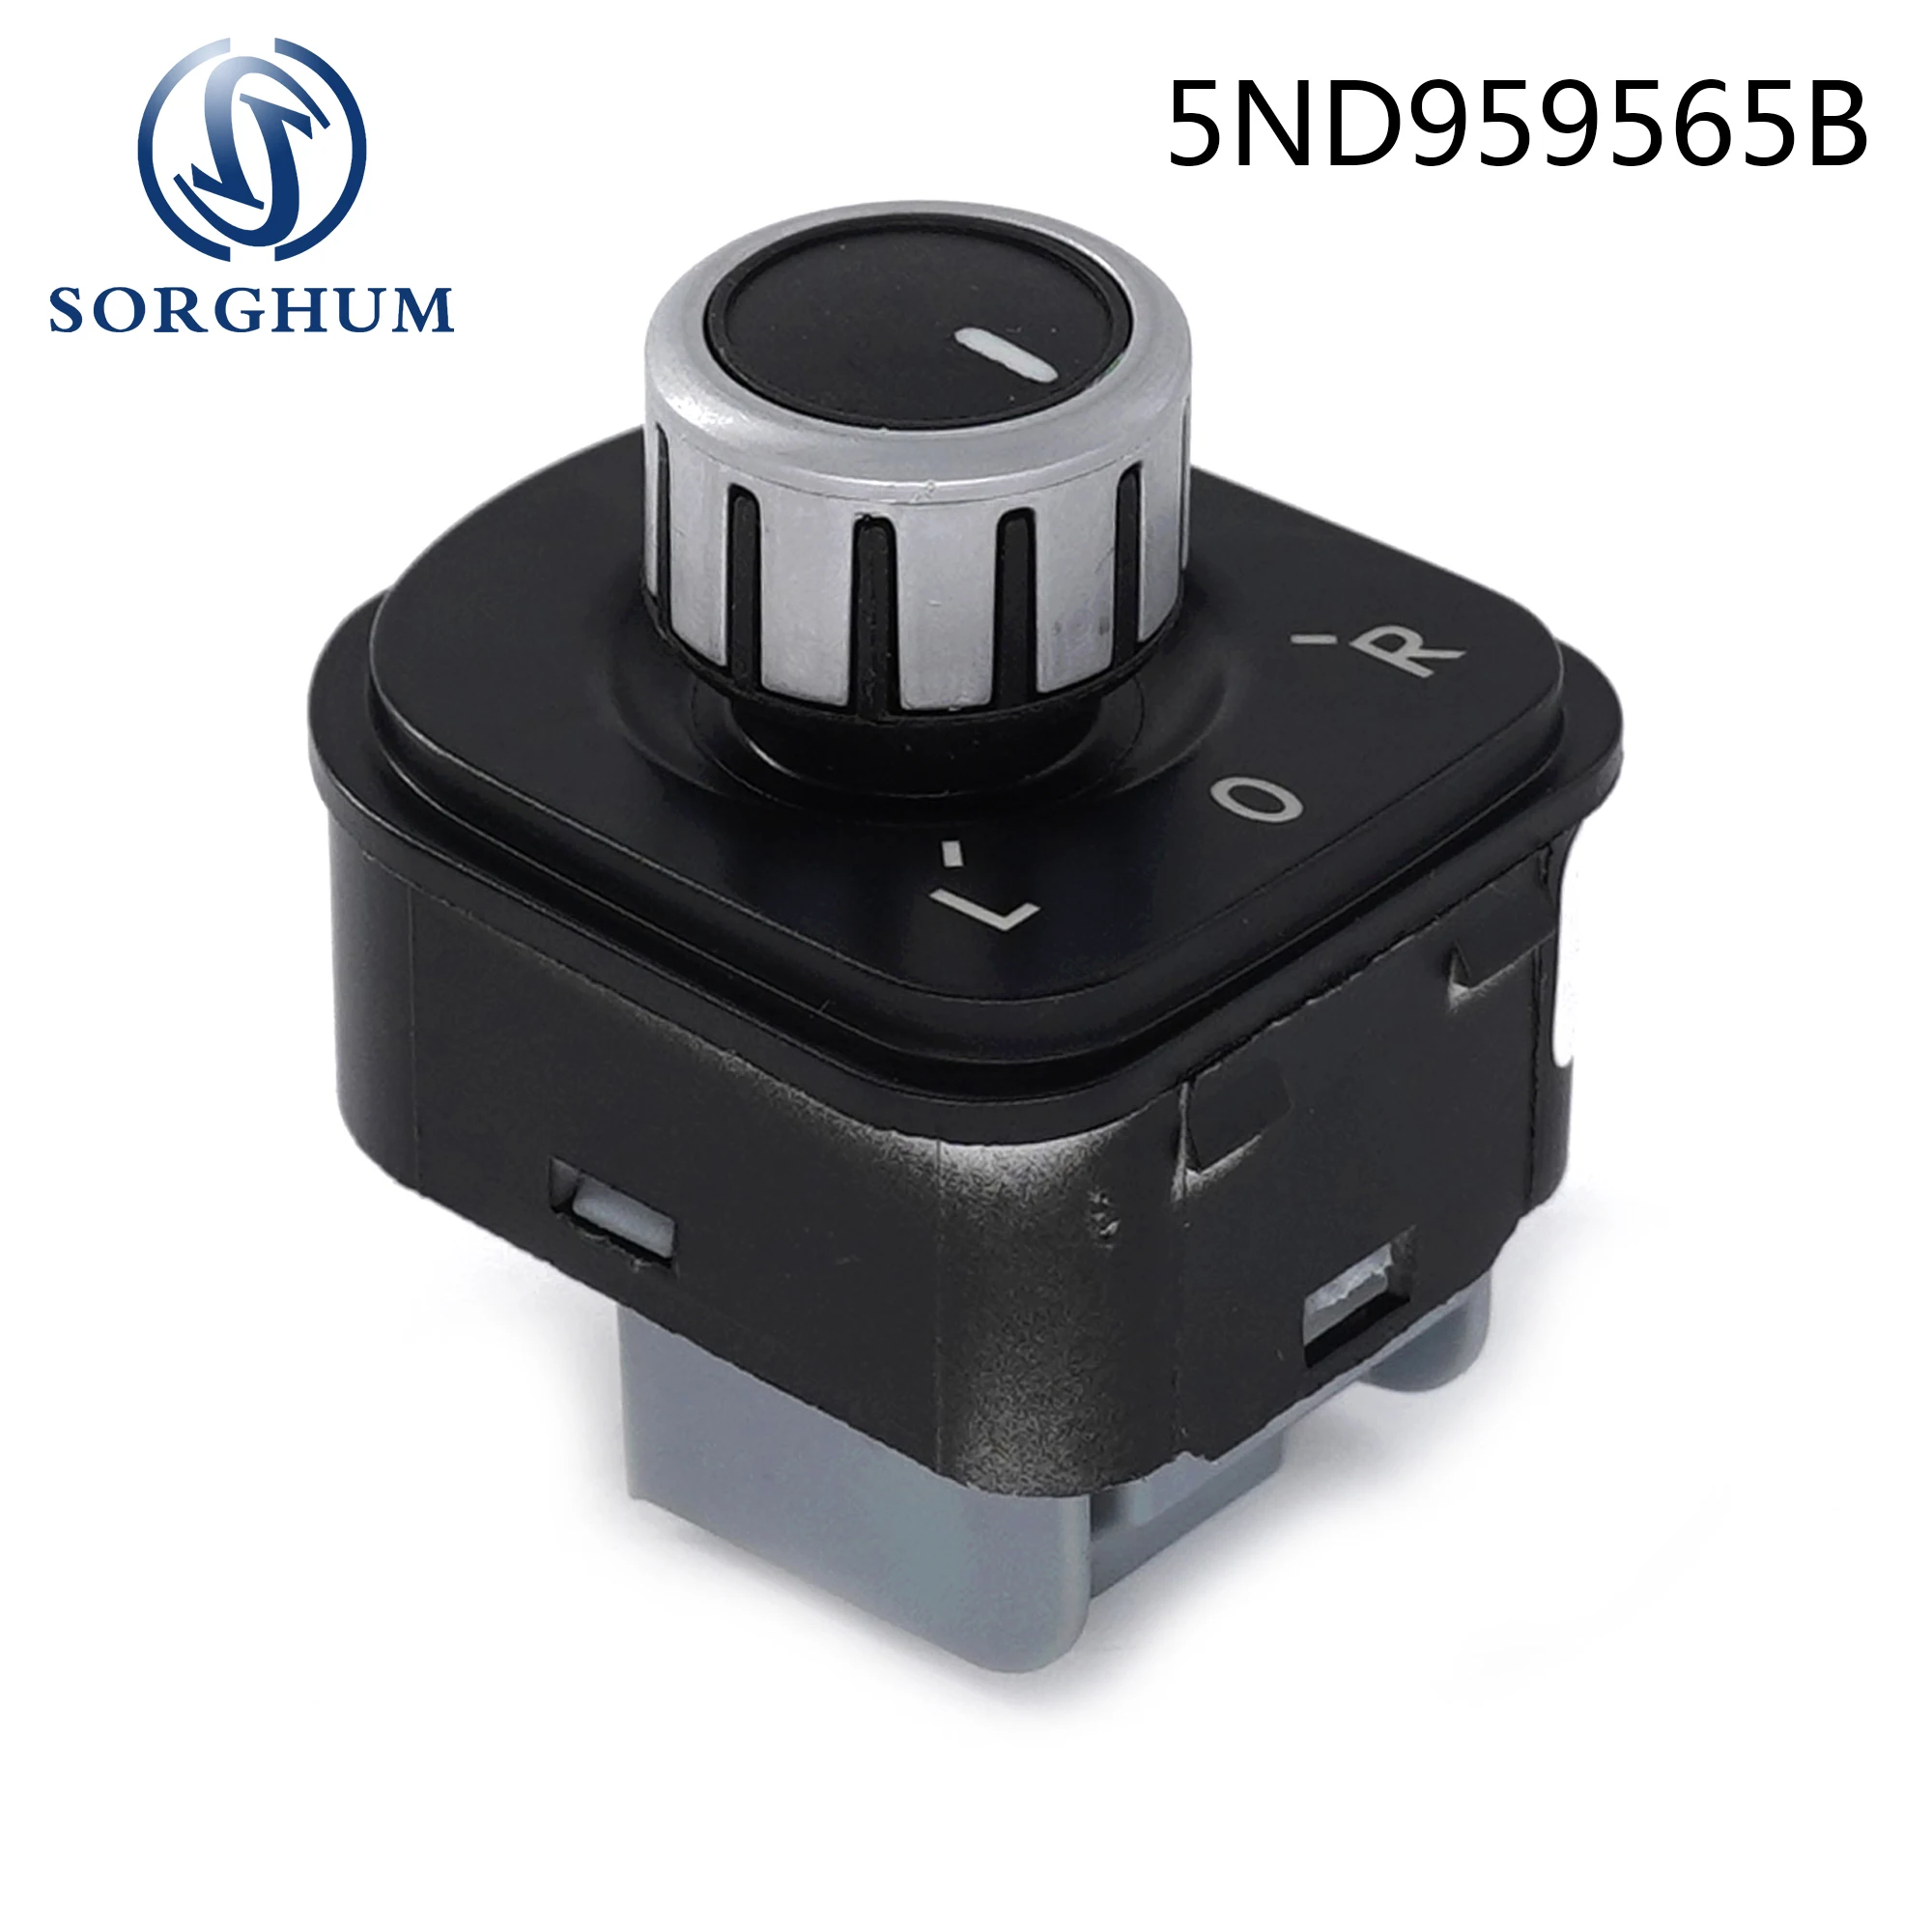 

Sorghum Chrome Rear Mirror Adjust Knob Control Switch 5ND959565B For Volkswagen J-etta MK5 Golf MK5 MK6 Rabbit Eos Passat B6 3C